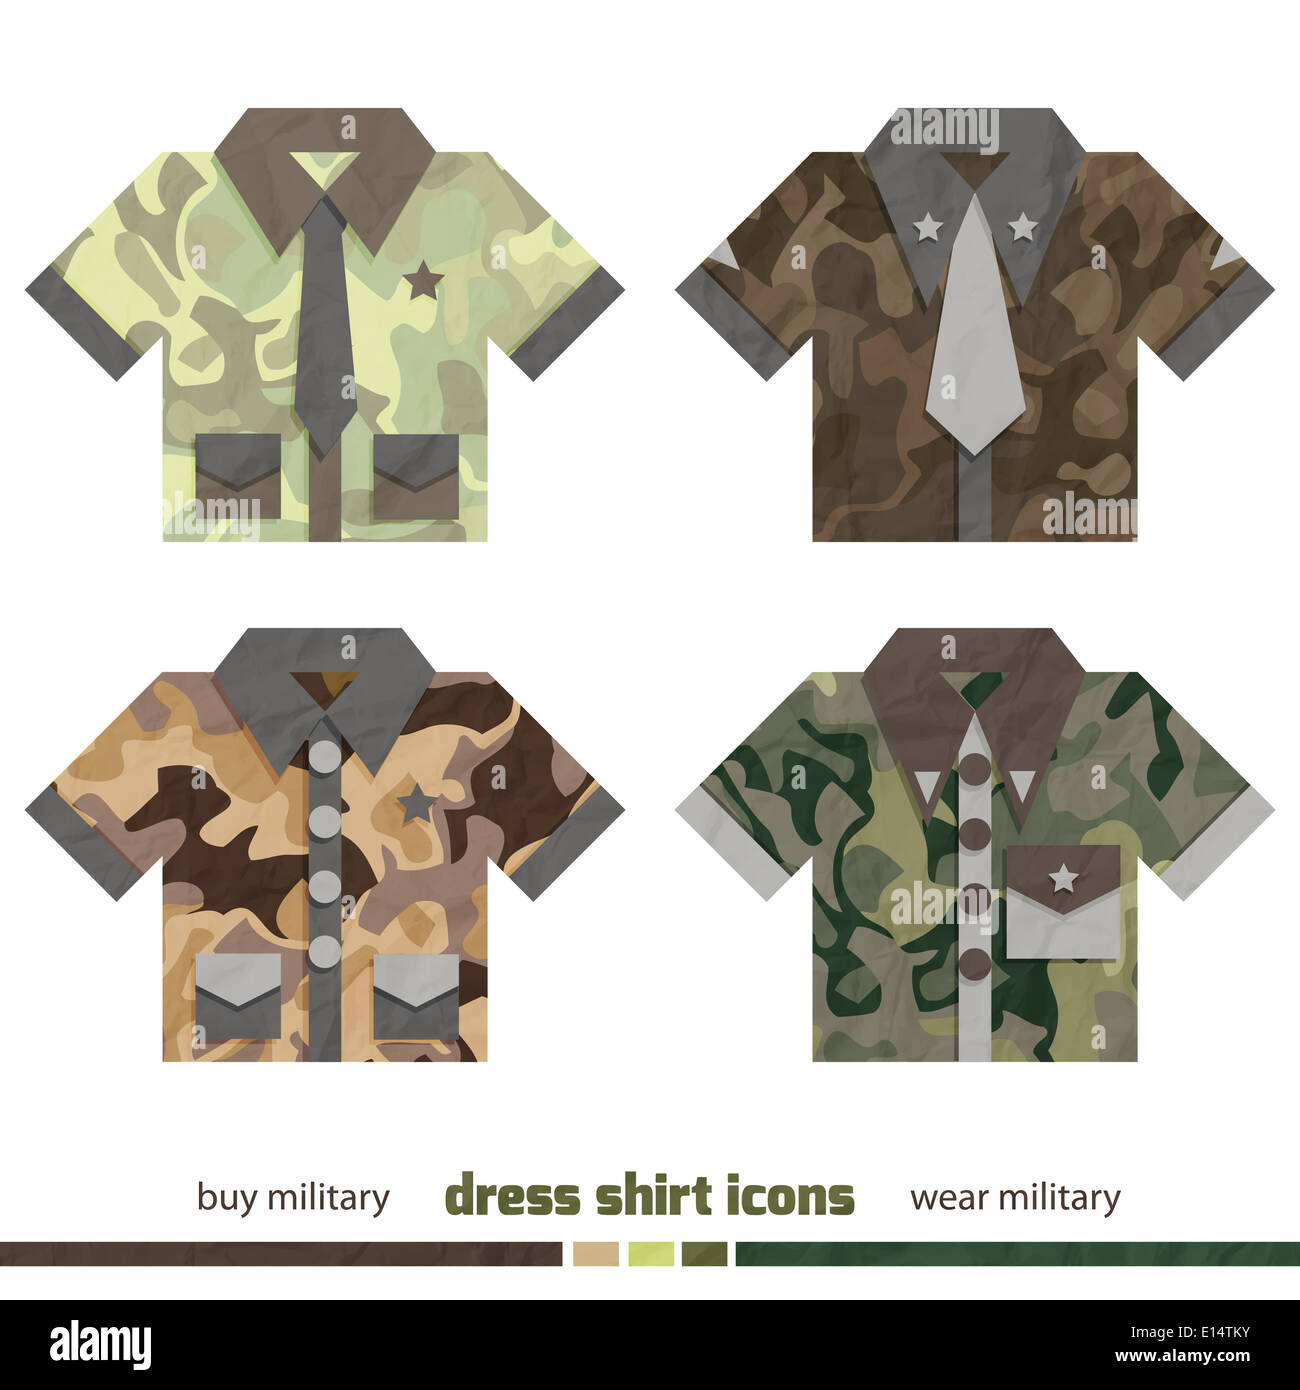 neues set von militärischen Kleid Shirt Icons mit modernen Camouflage-design Stockfoto